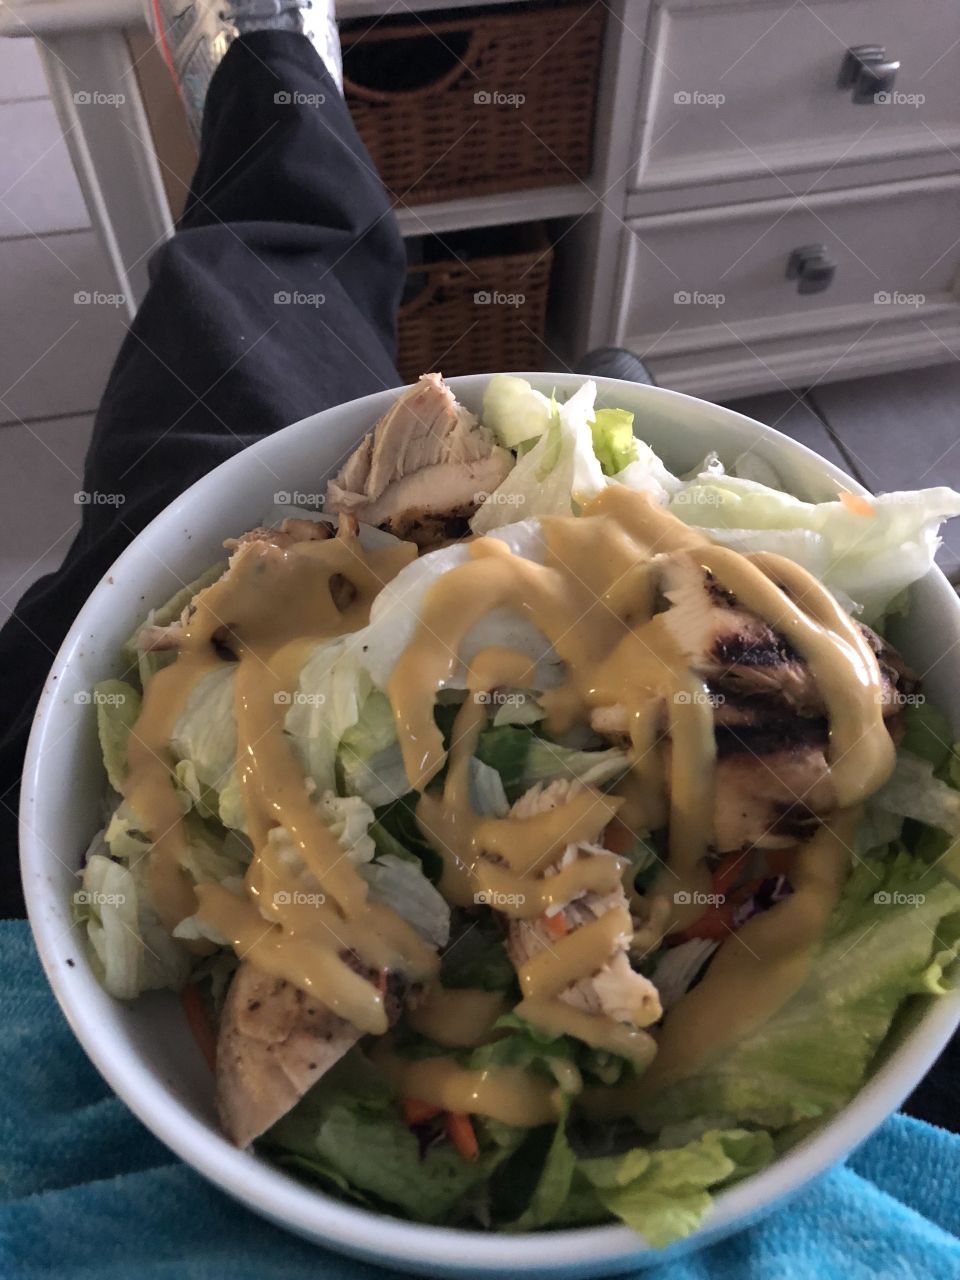 Grilled chicken salad! Yummy